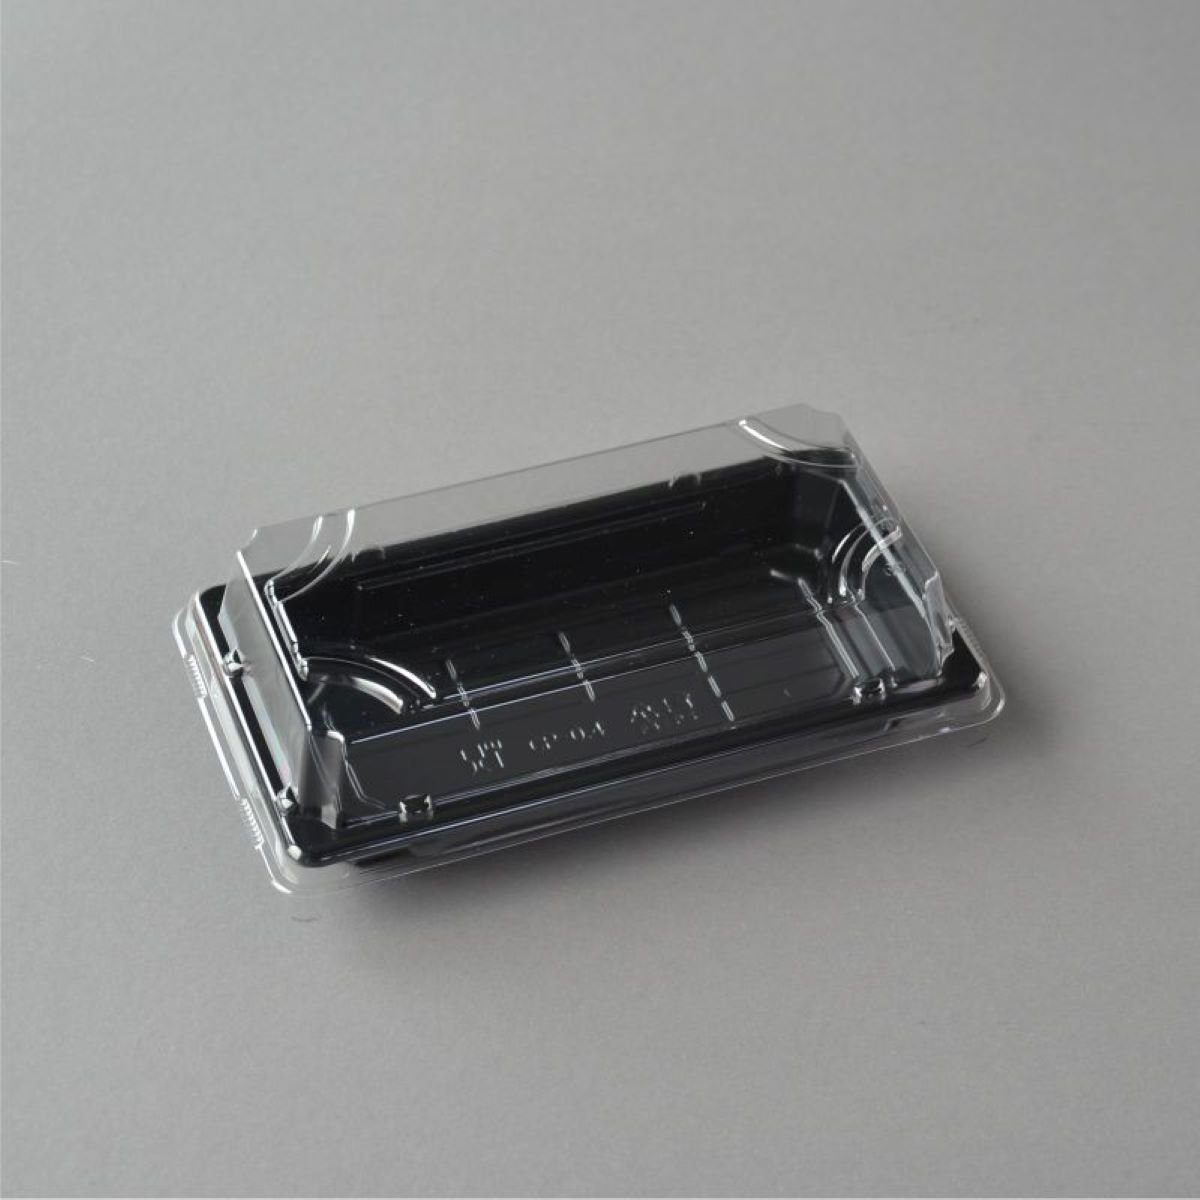 Stück Schalen 400 Tray OP mm), Box Verpackung Sushi Sushi Sushi (168×93×31 Deckel Boden, Einwegschale 0.4 wellenförmigen mit mit